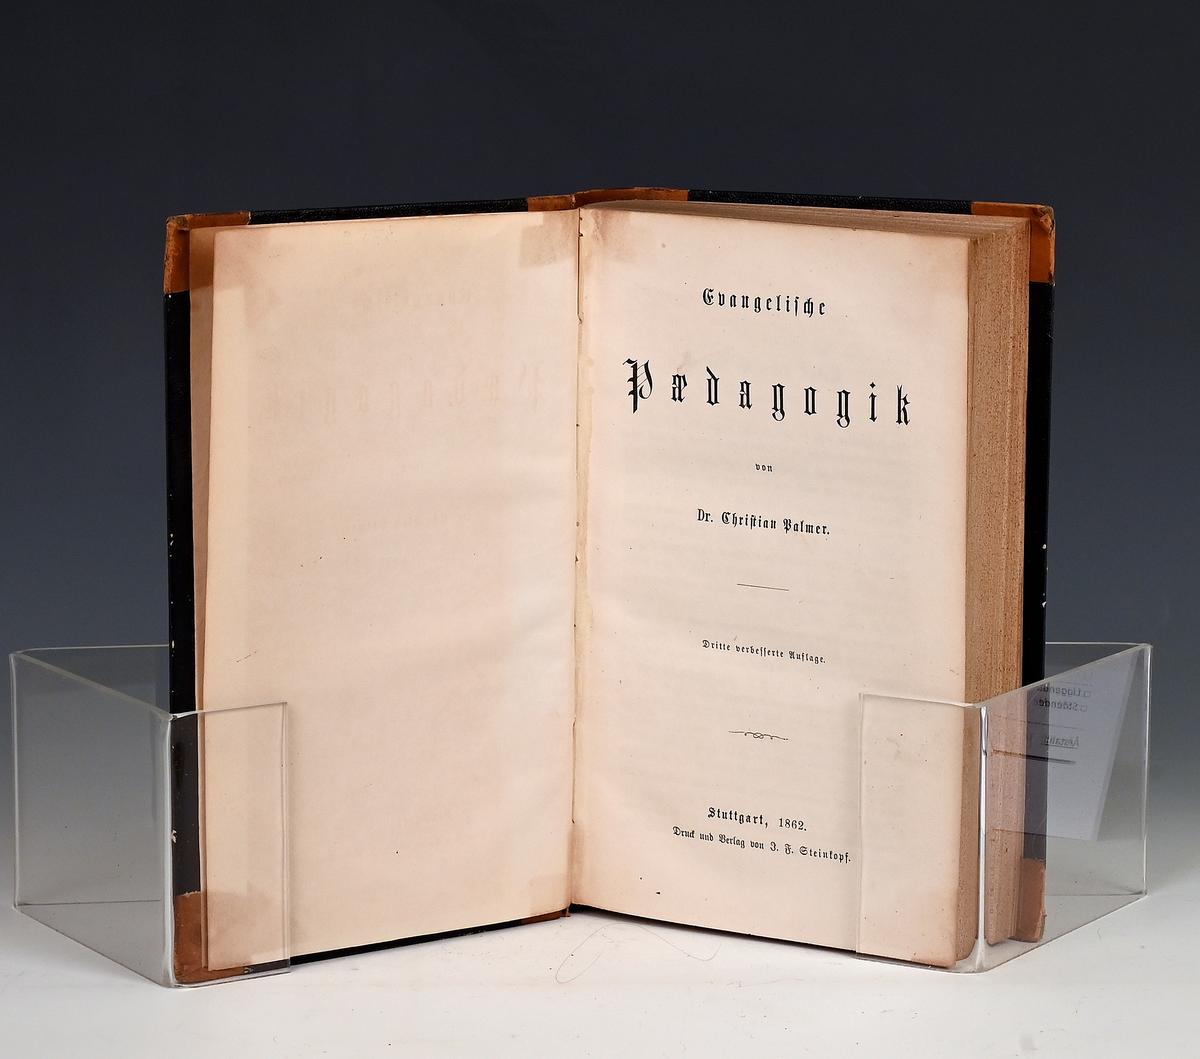 Palmer, Christian. Evangelische Pedagogik. Dritte.. Aufl. Stuttgart. 1862.